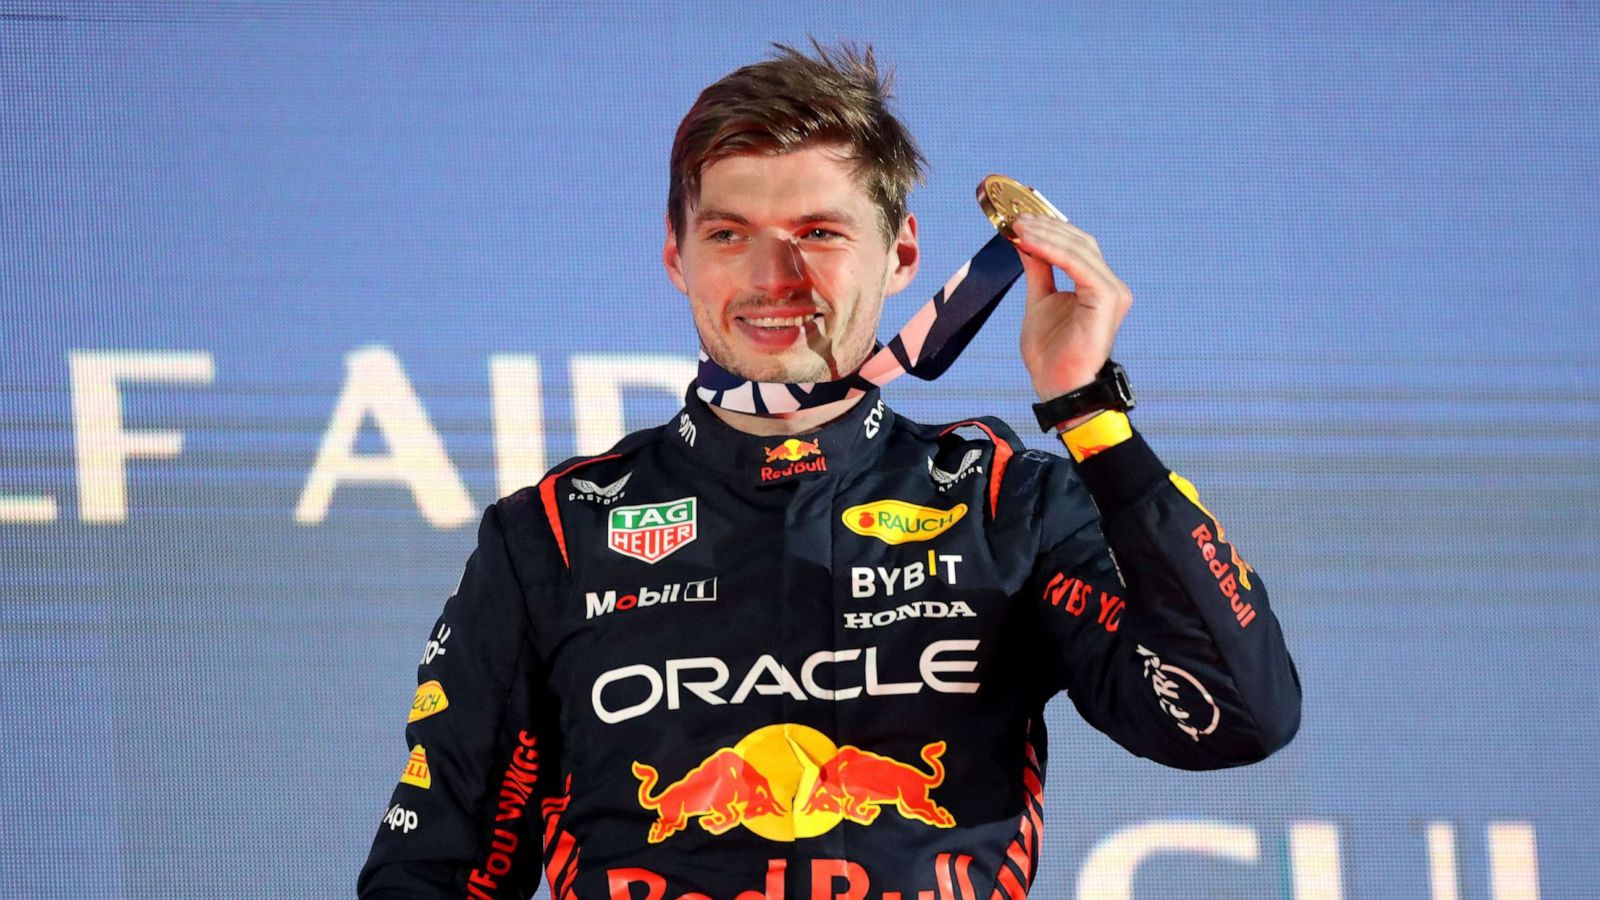 Dicteren Opa overdracht Formula 1 champ Max Verstappen on Red Bull's winning streak: 'We fought for  this' - ABC News